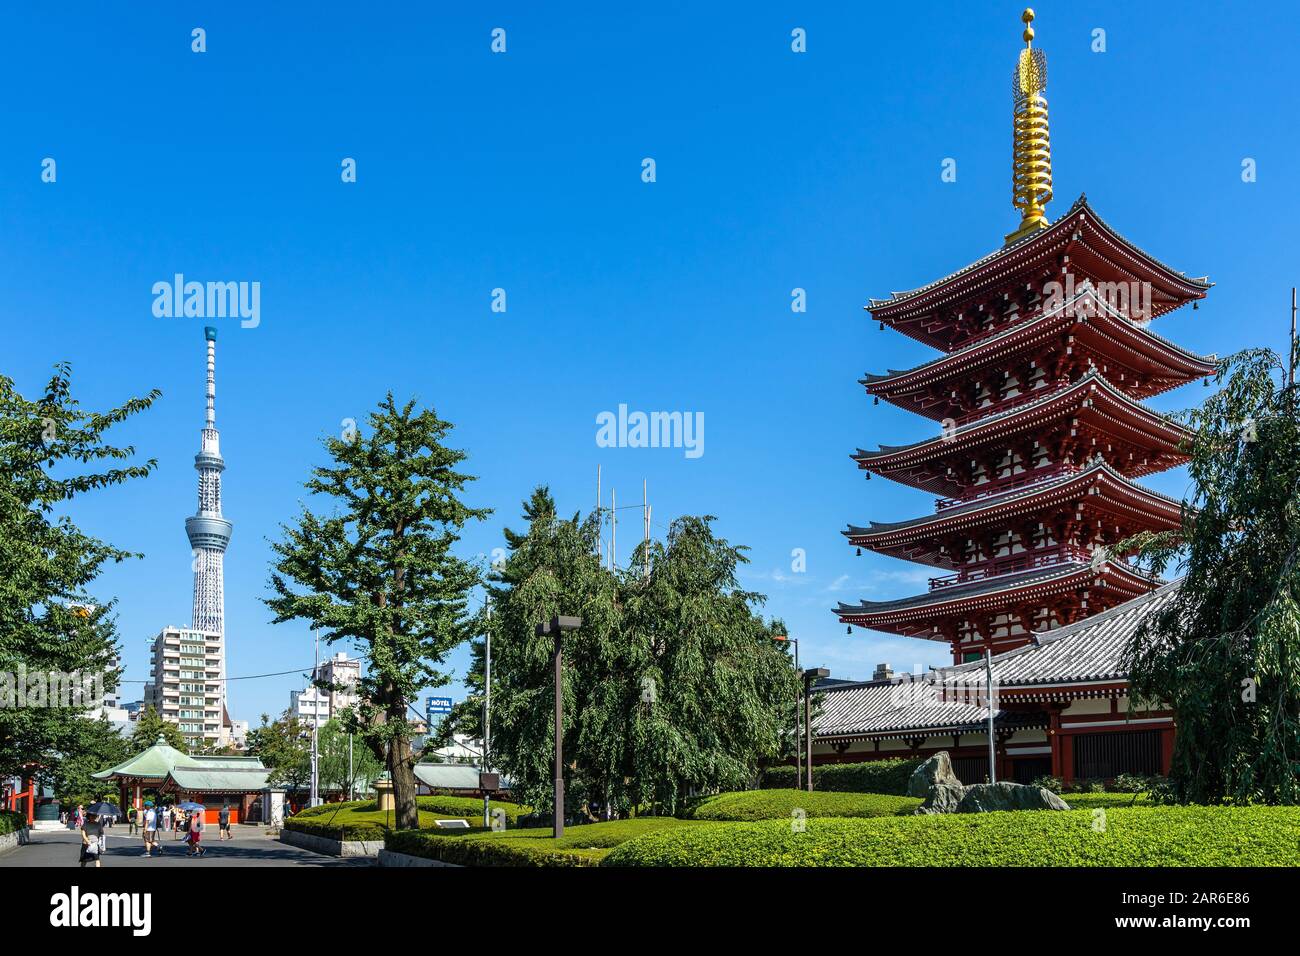 Vue sur la pagode du temple d'Asakusa et sur la tour de télévision de Tokyo Sky Tree. Tokyo, Japon, Août 2019 Banque D'Images